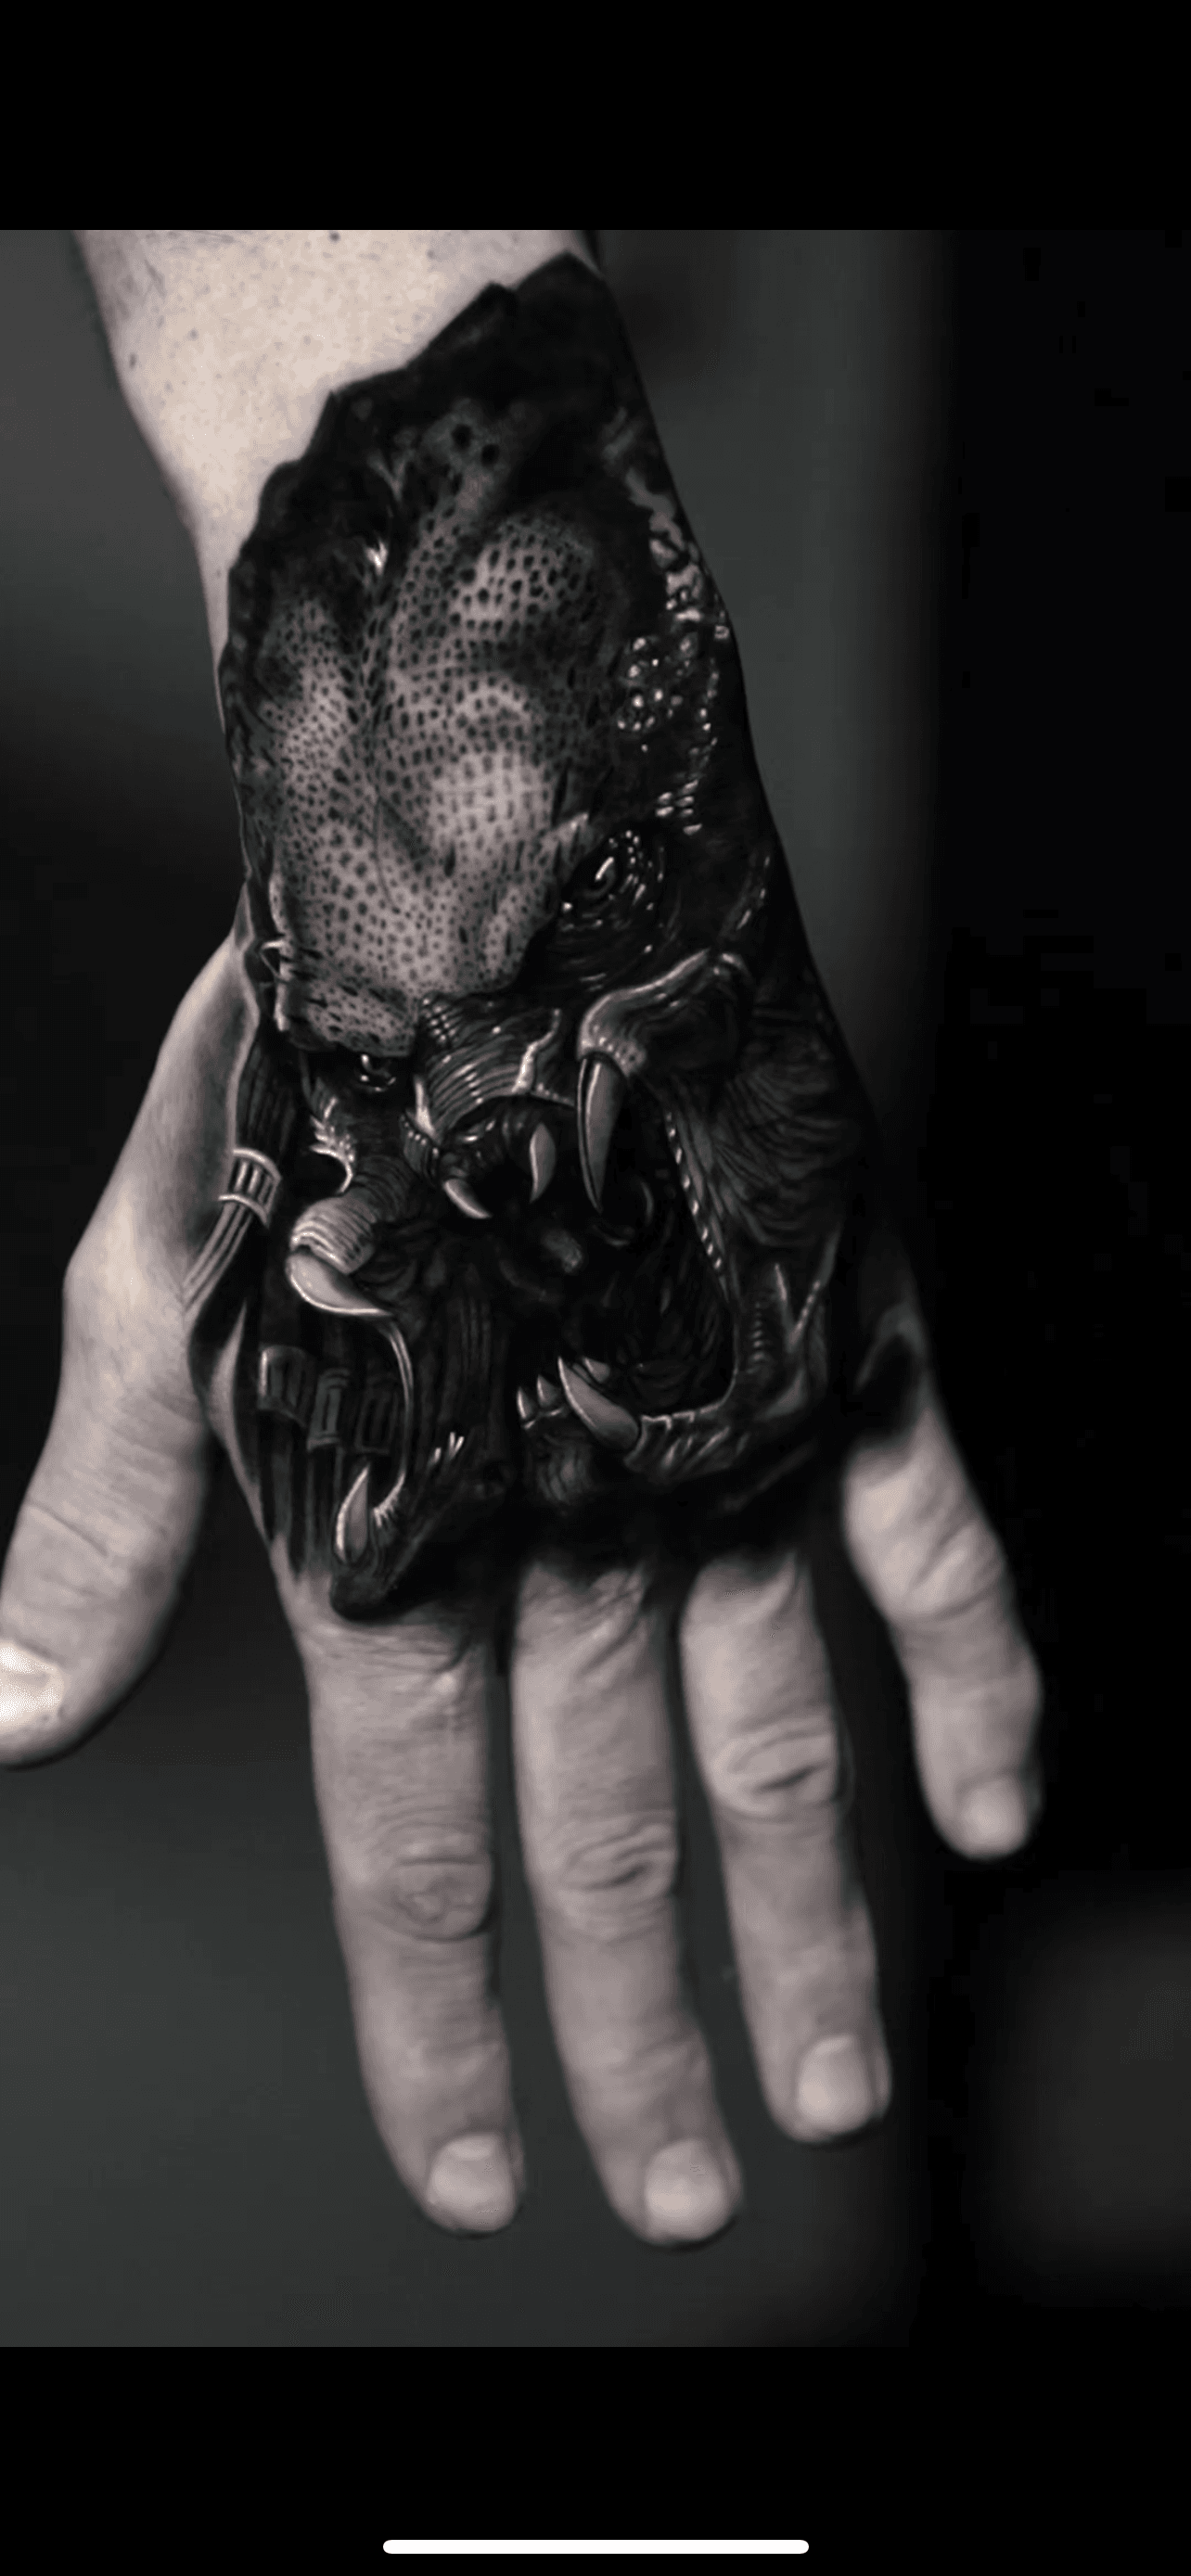 Inksearch tattoo Elena Lamberti